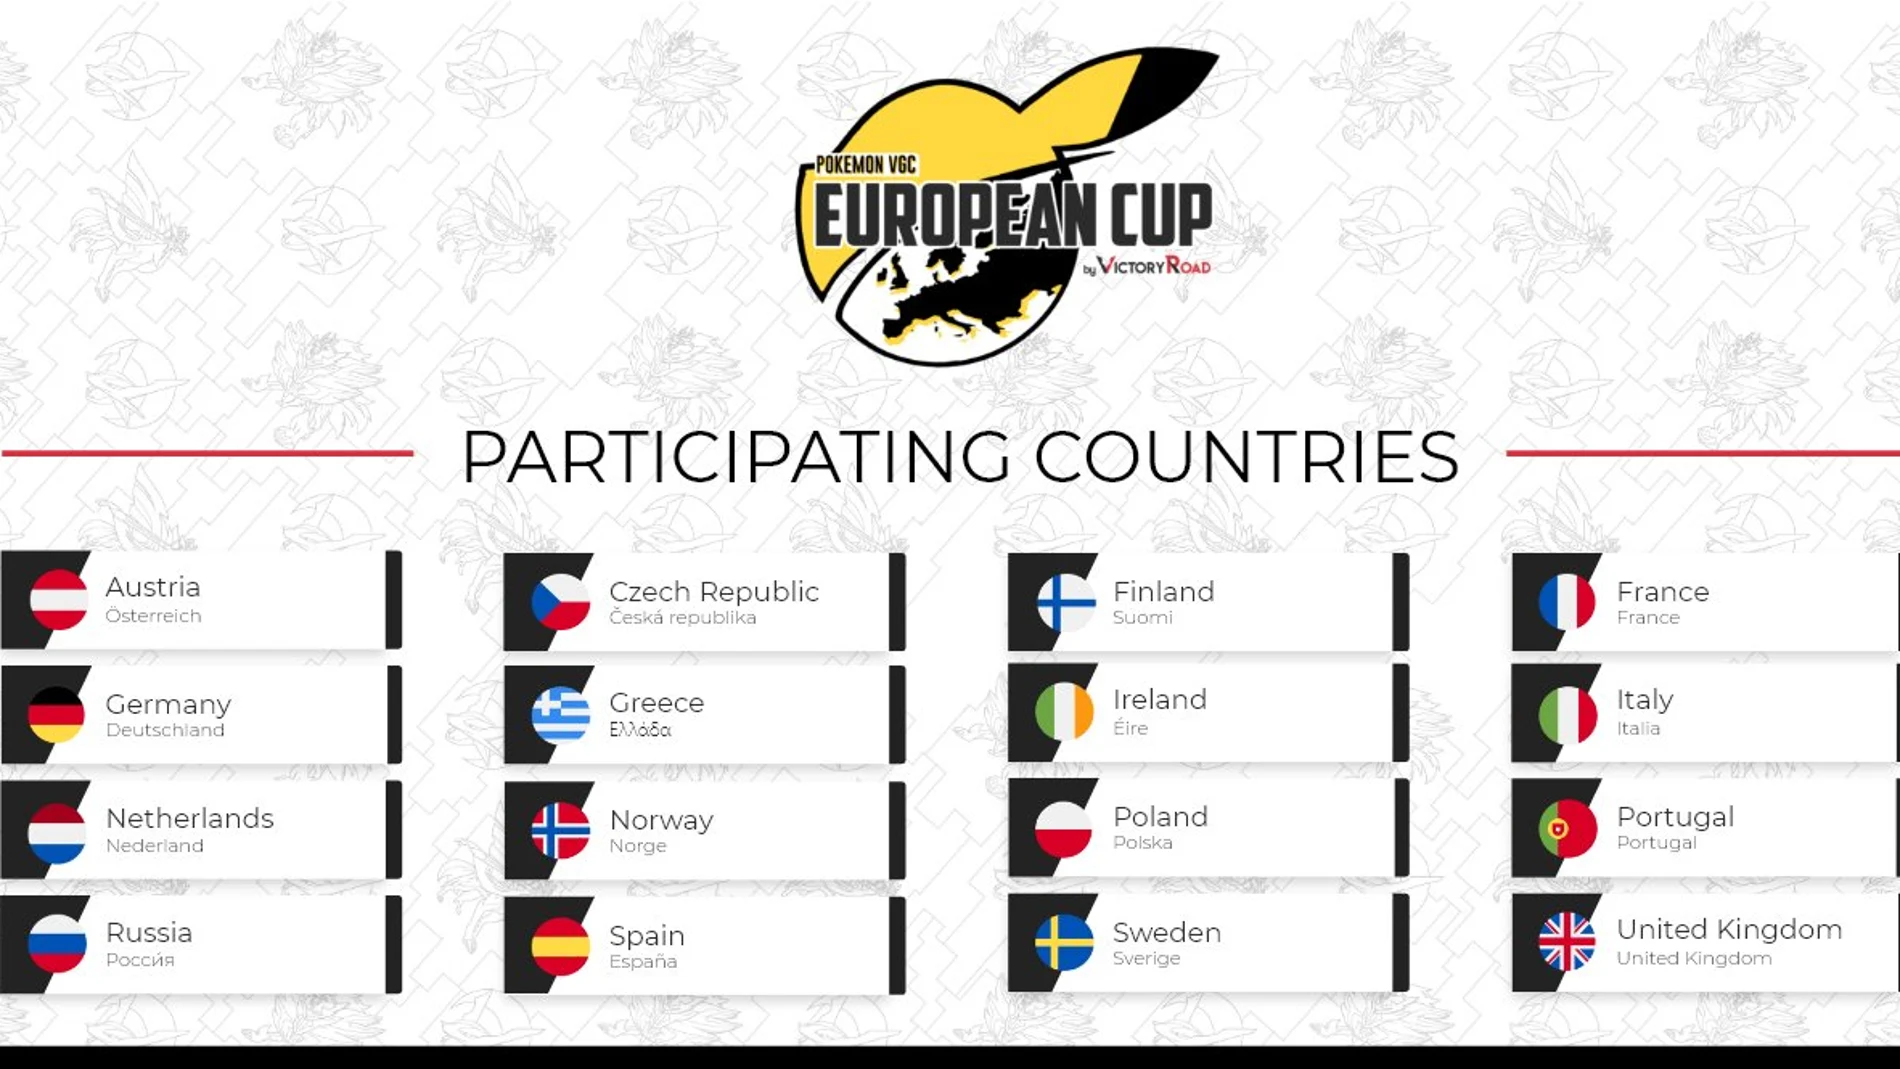 Pokémon VGC European Cup